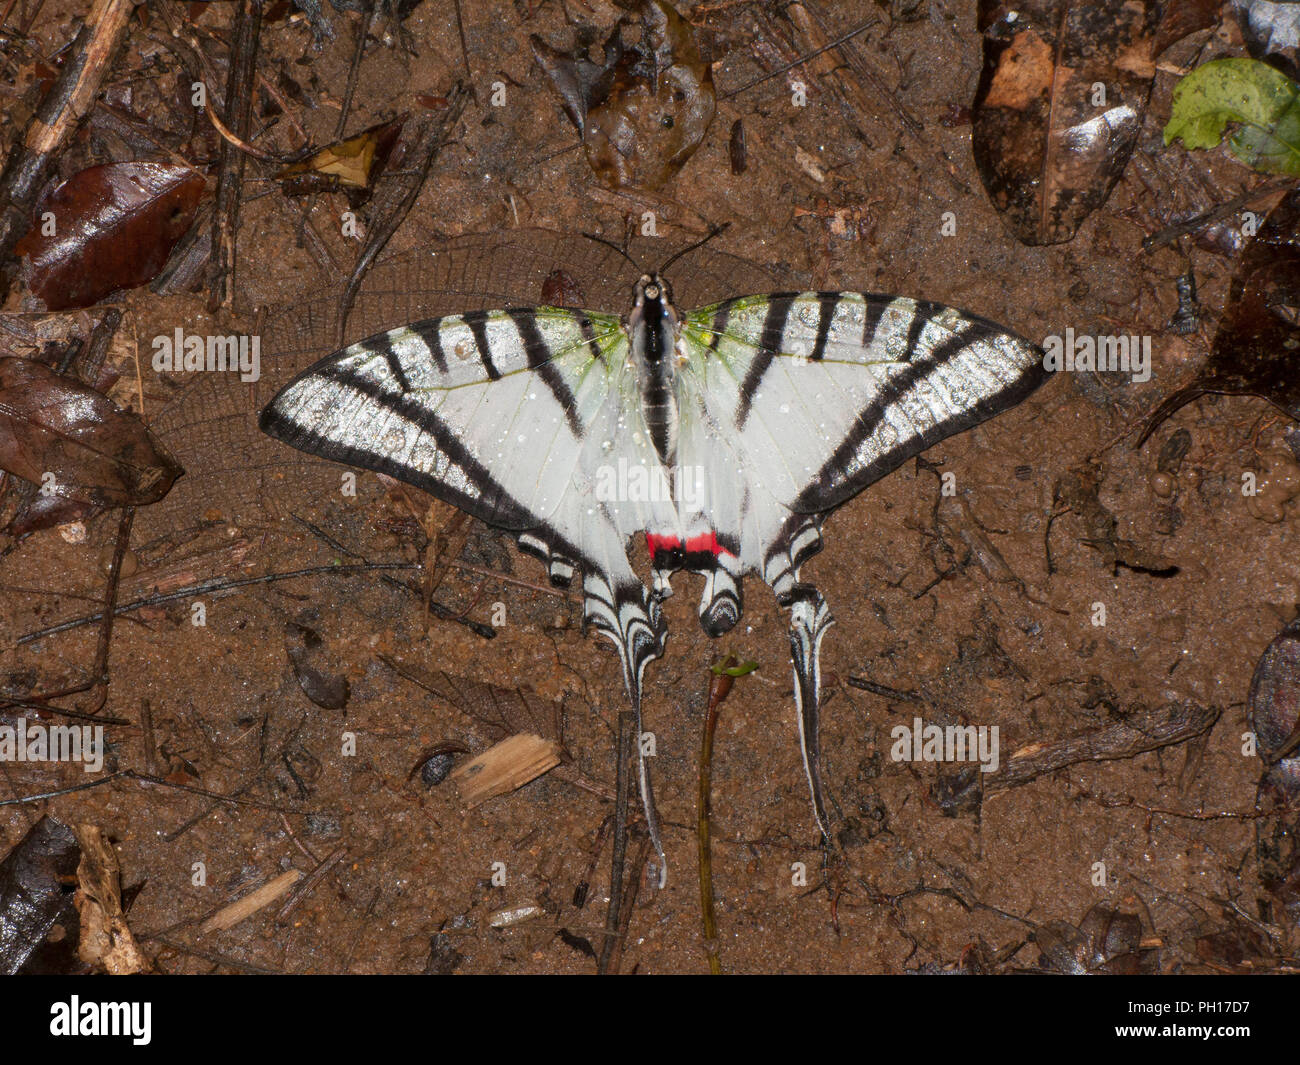 A coda di rondine, Butterfly Eutytides molops, singolo adulto morto sul pavimento della foresta, presi a ottobre, foresta pluviale Atlantica, Stato di Rio de Janeiro, Brasile. Foto Stock